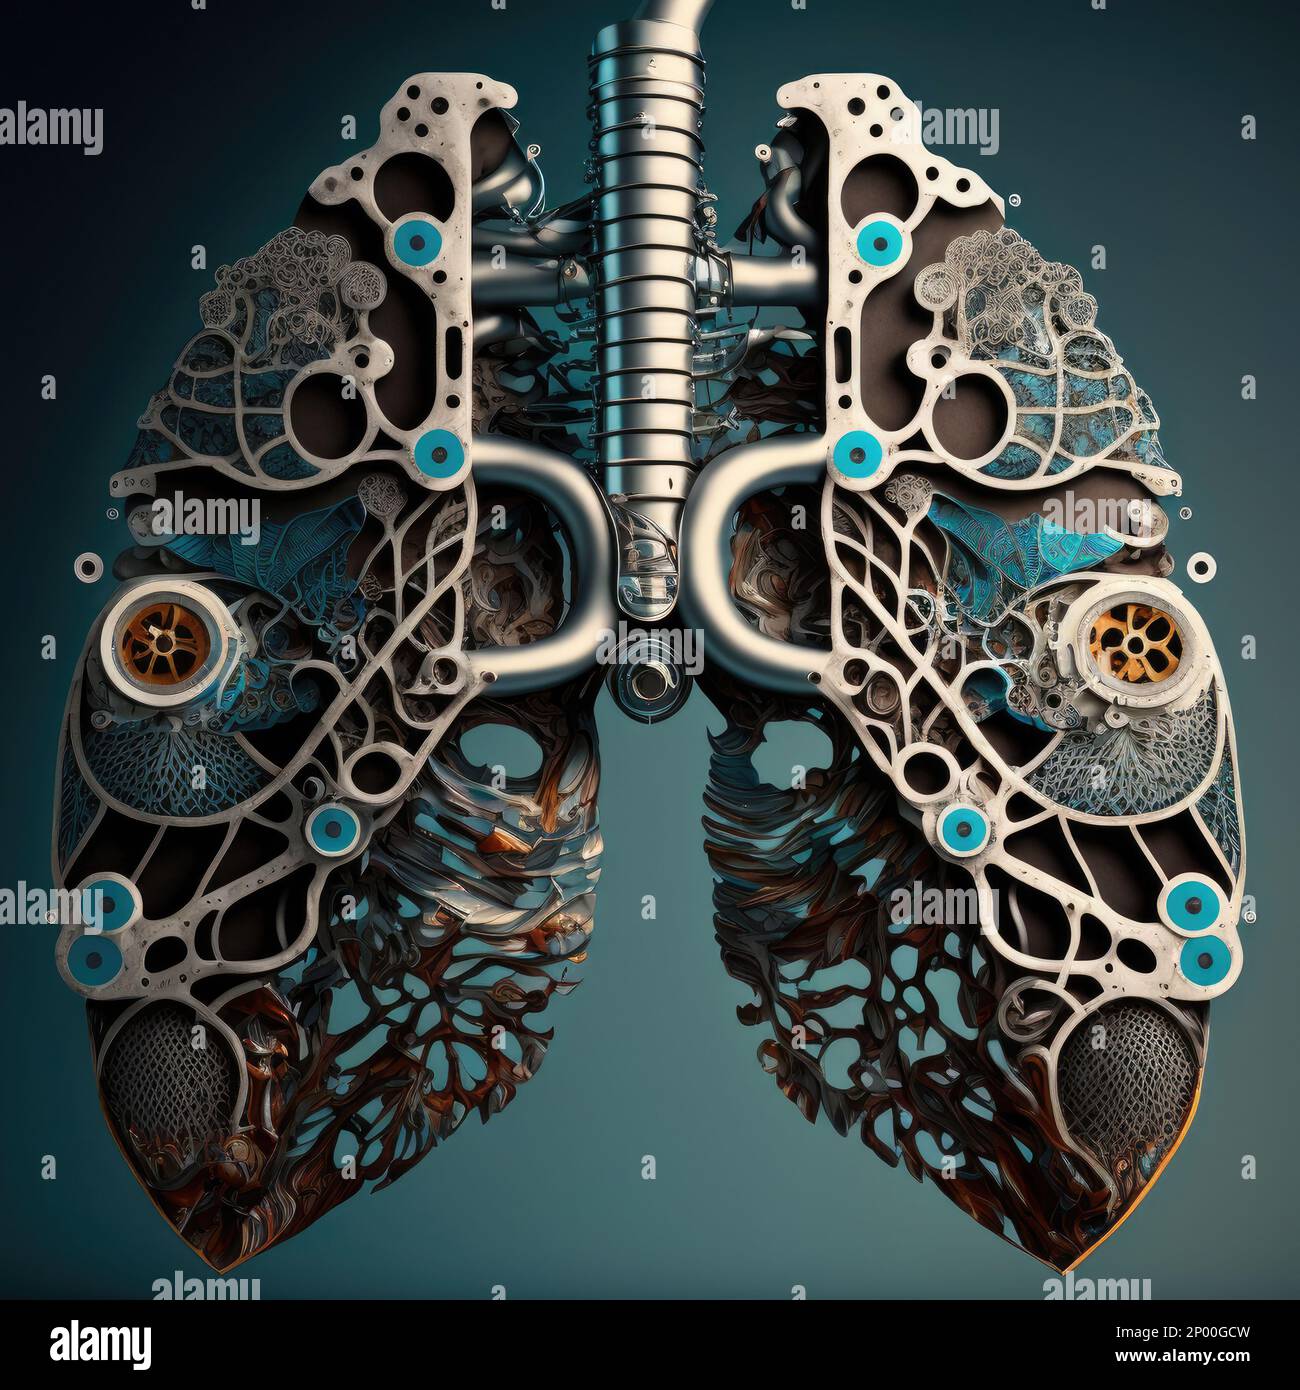 lobi polmonari umani costituiti da parti meccaniche, immagine concettuale per ingegneria biomedica Foto Stock